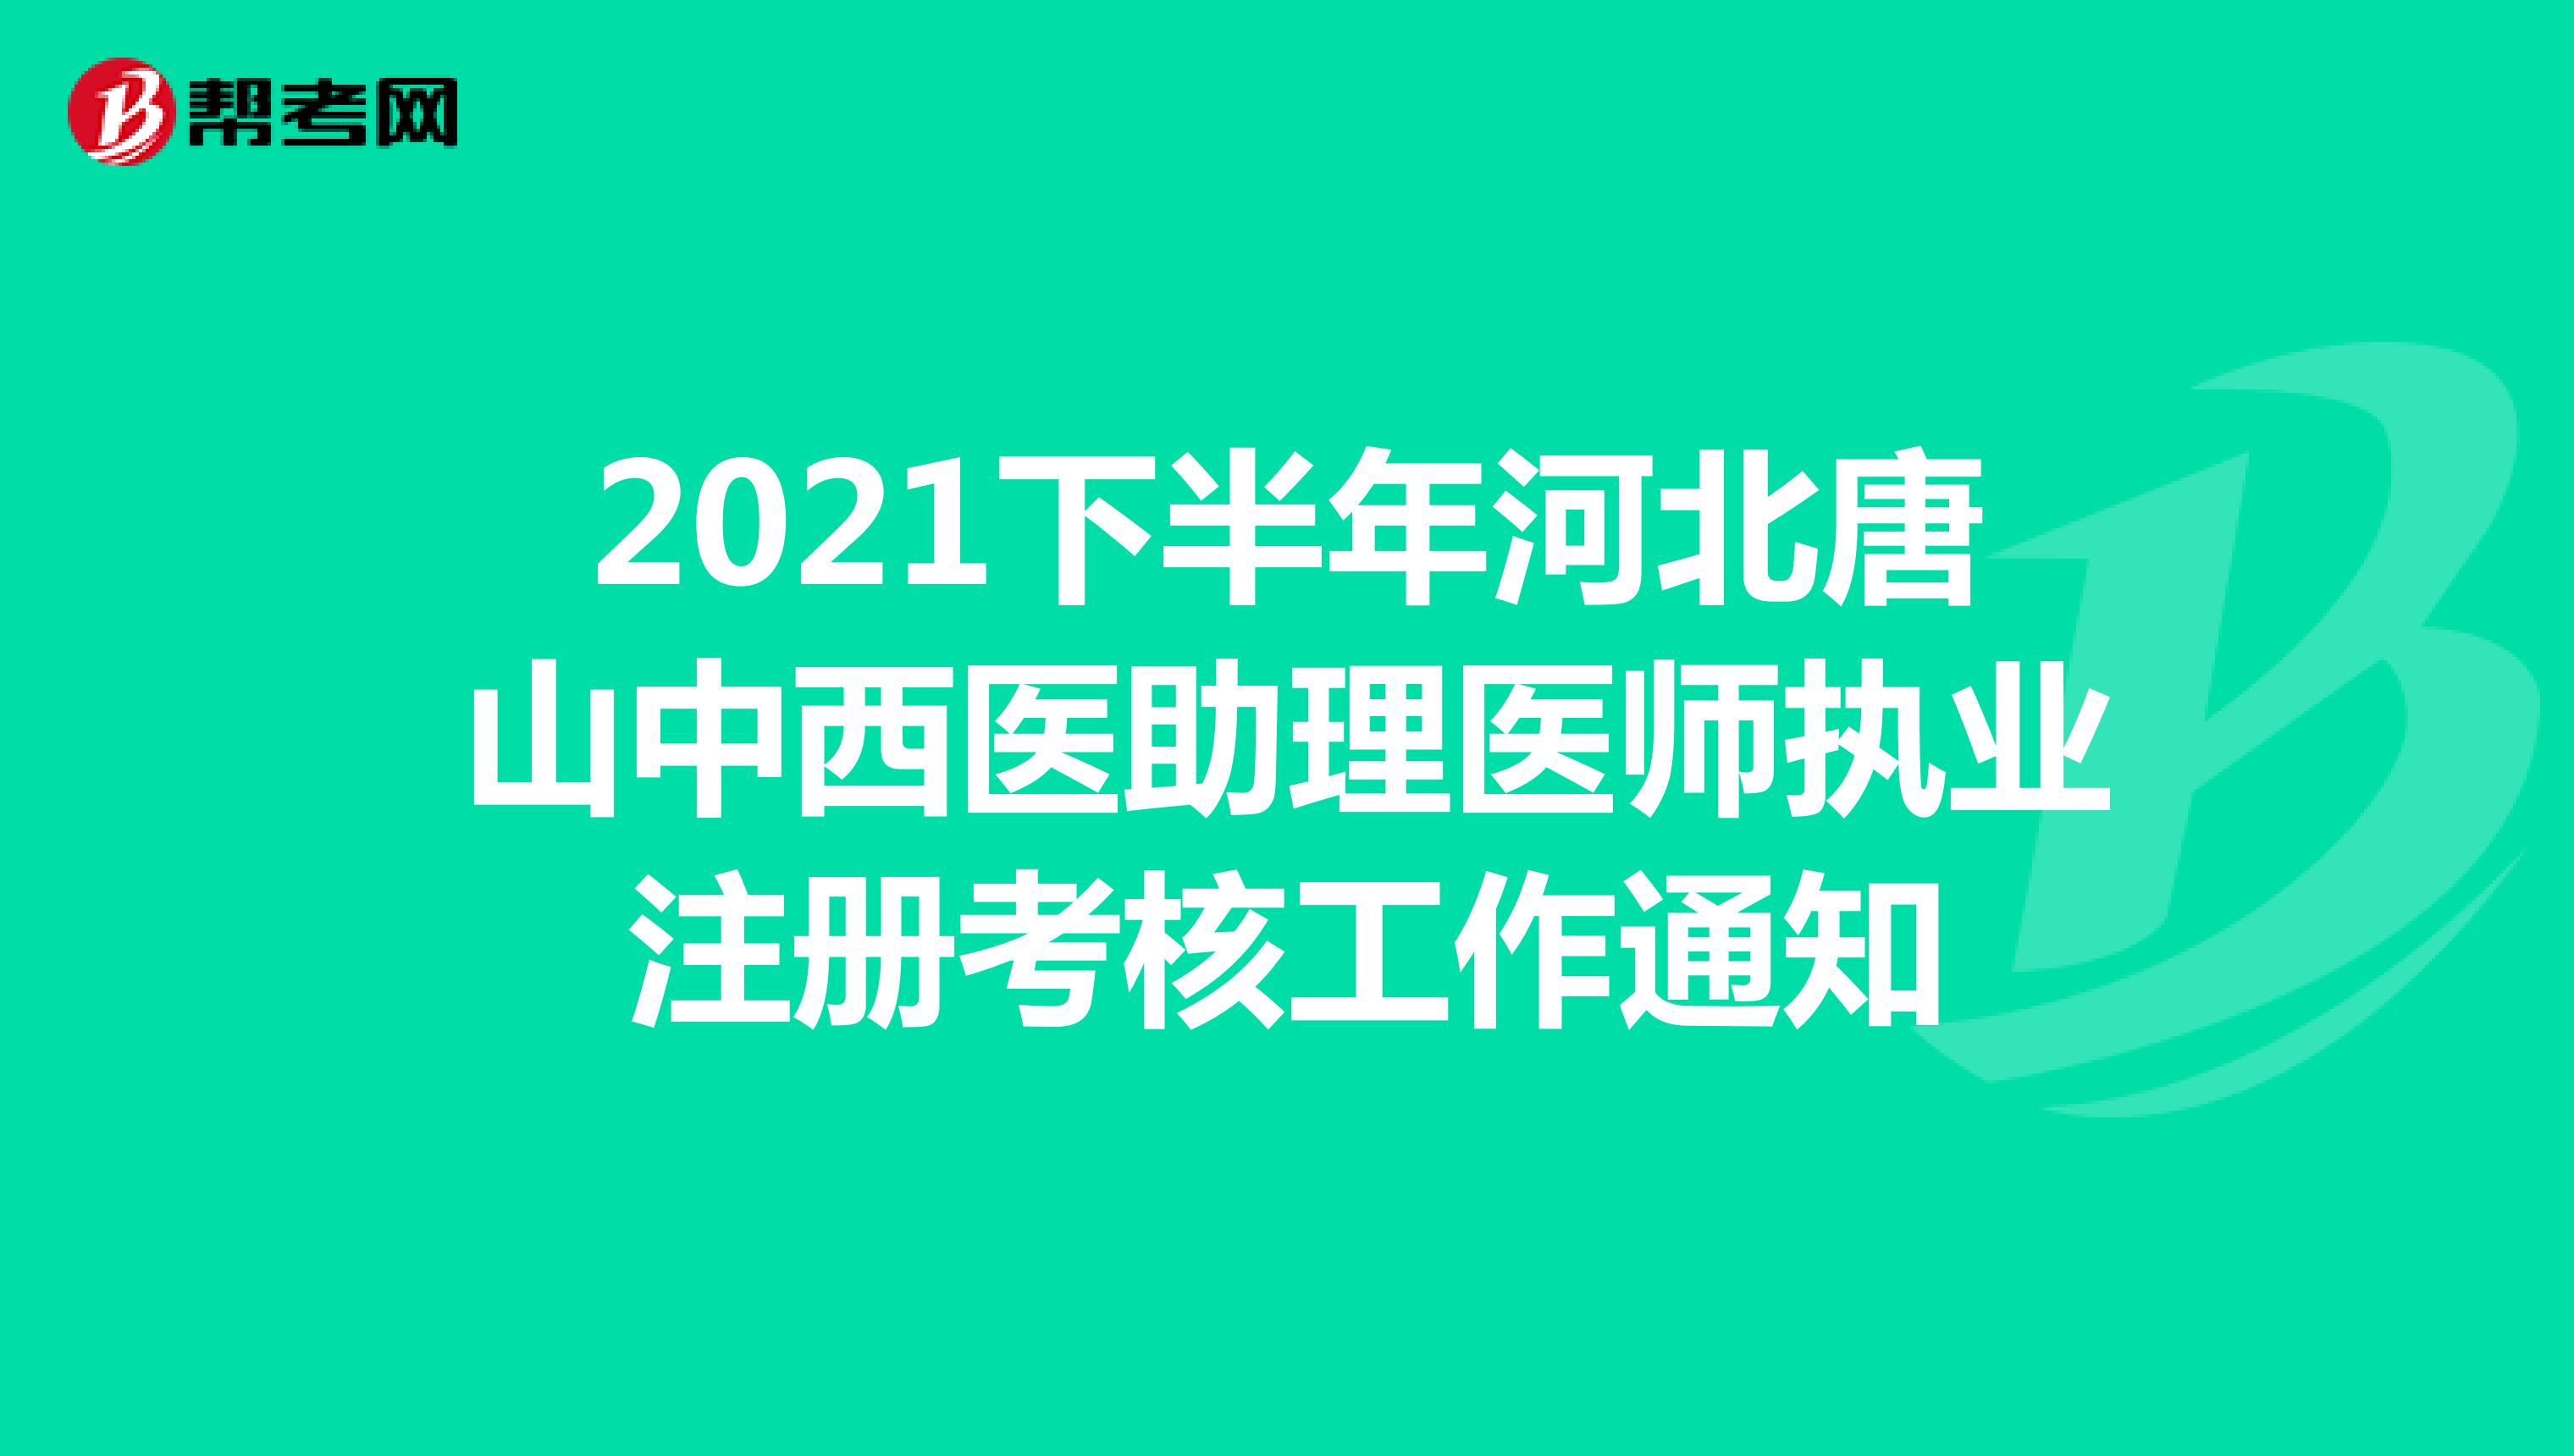 2021下半年河北唐山中西医助理医师执业注册考核工作通知